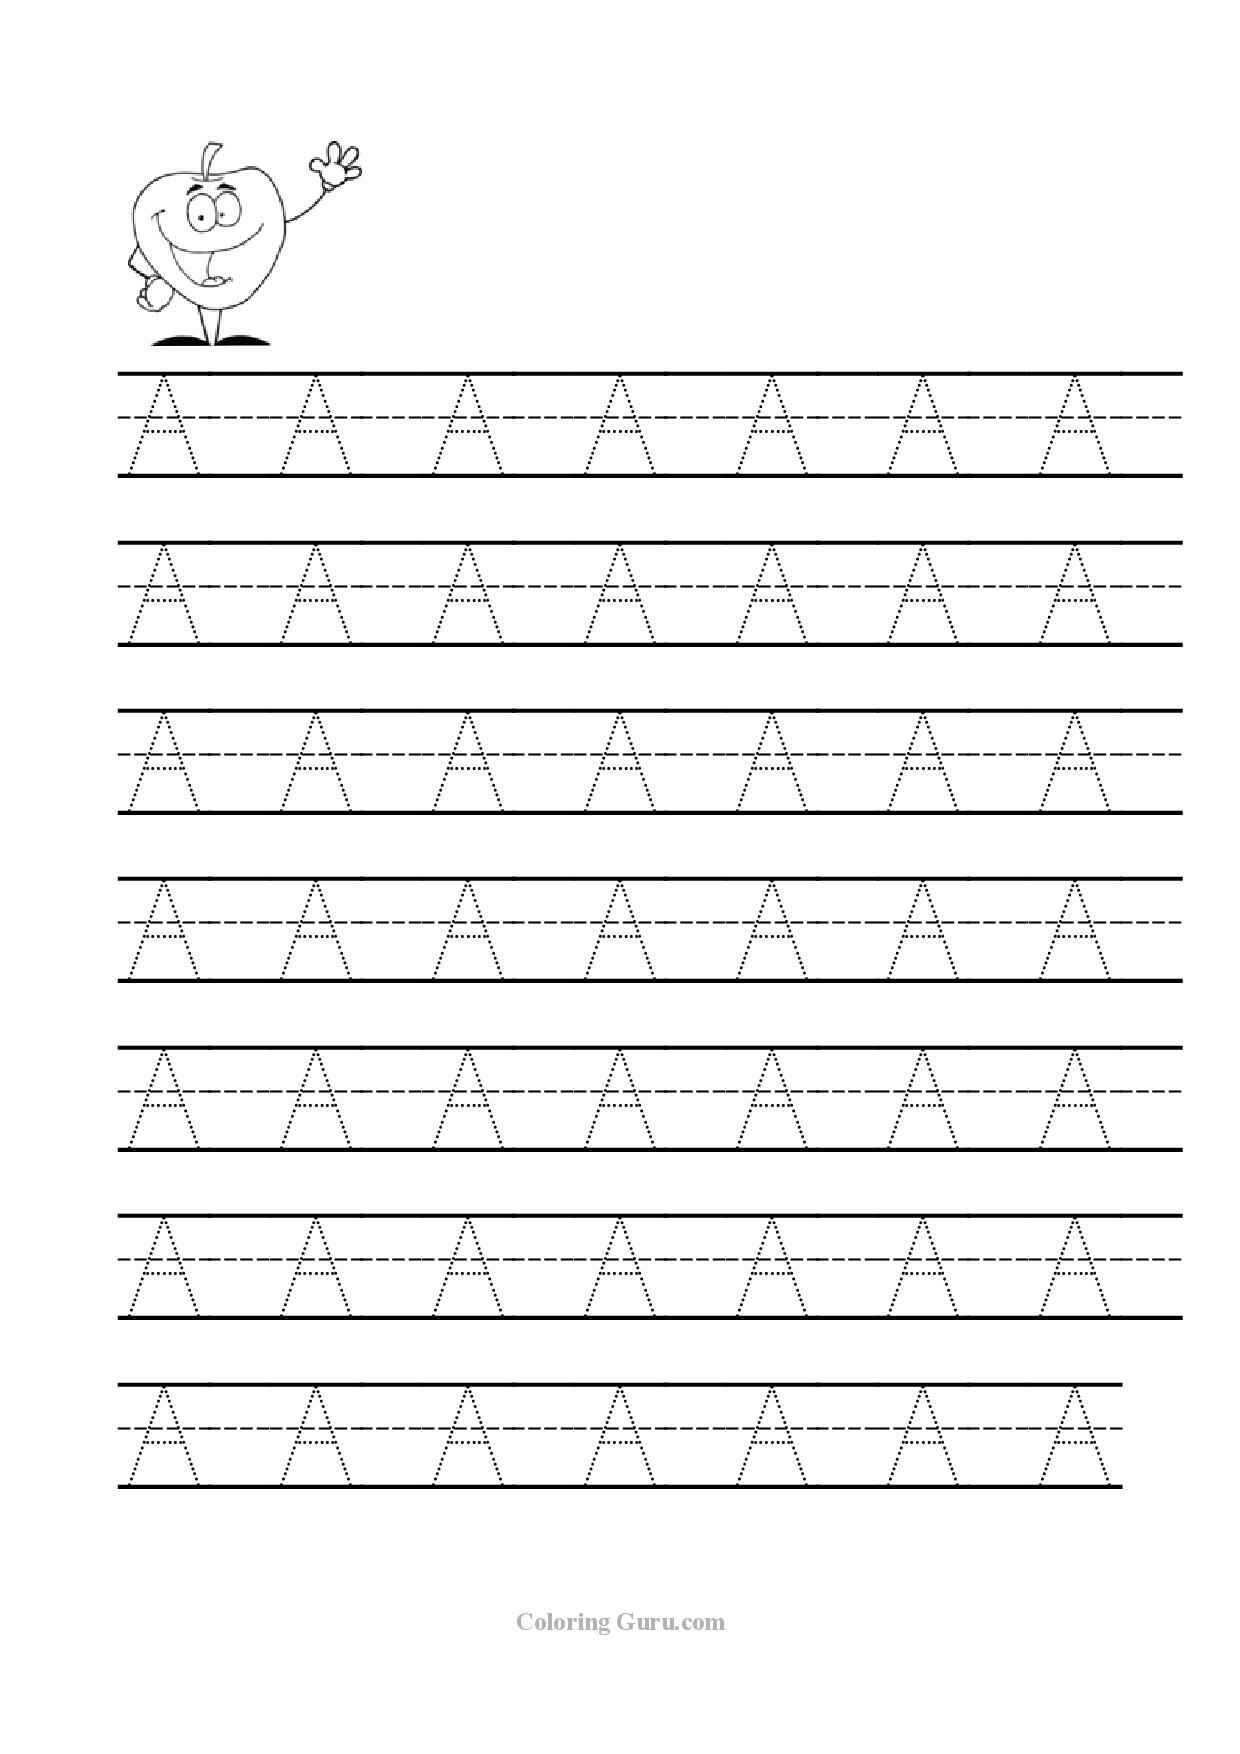 3 Urdu Tracing Worksheets Preschool - Share Worksheets